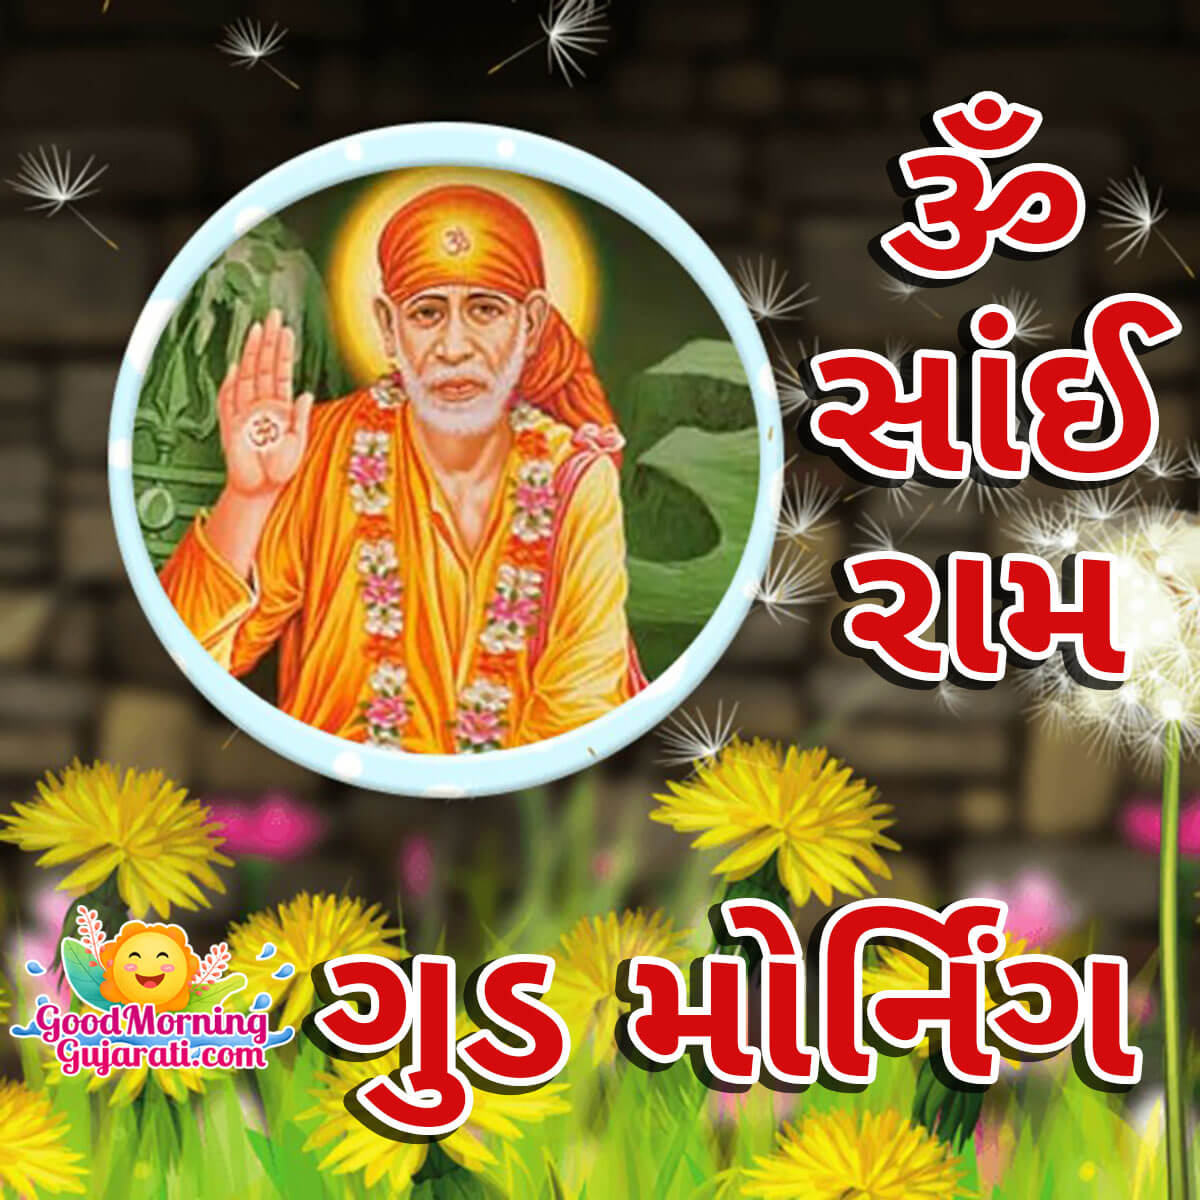 Om Sai Ram Good Morning Gujarati Image